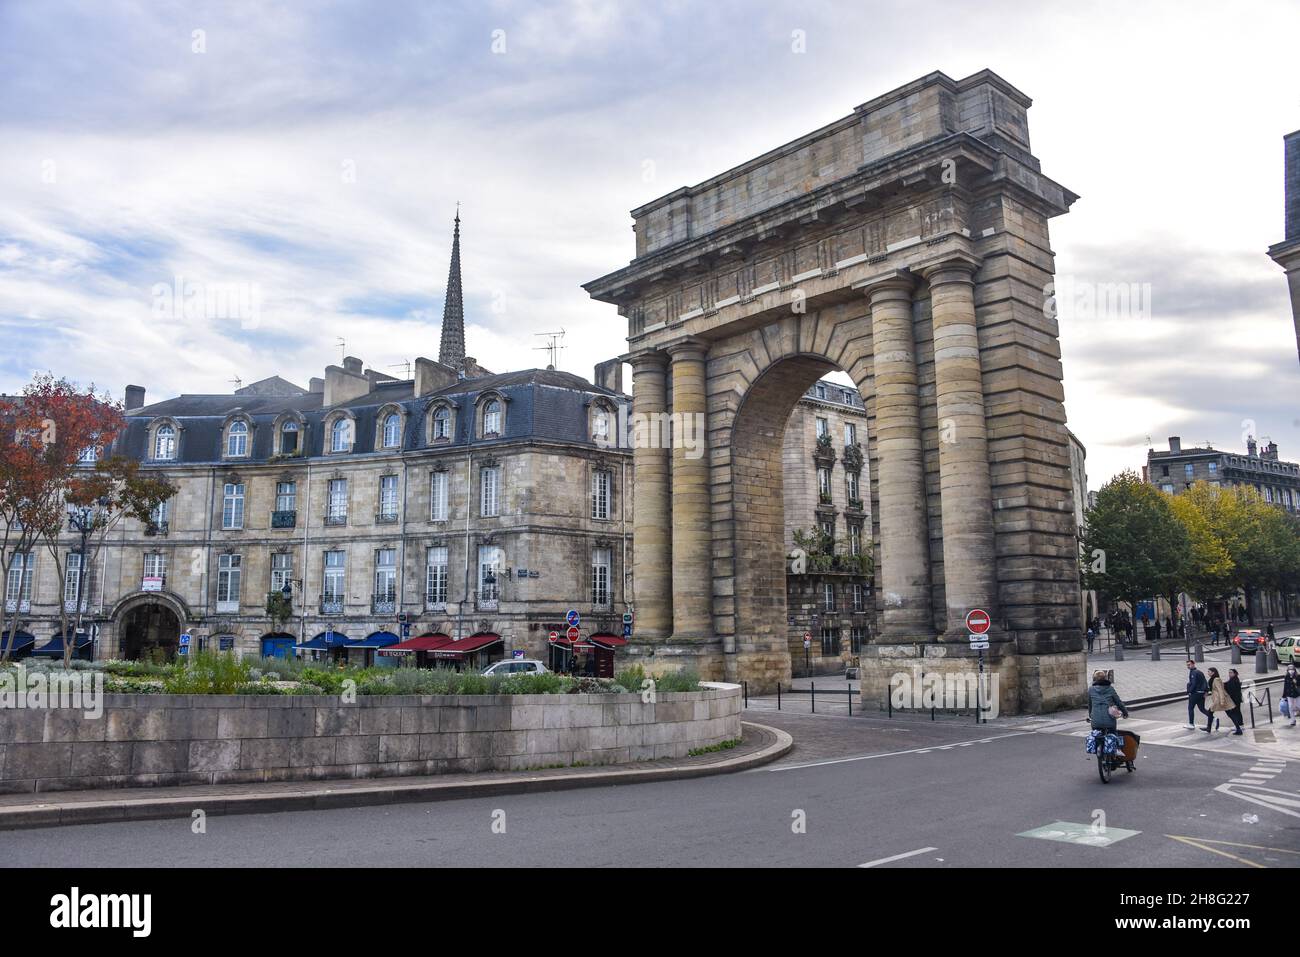 Bordeaux, Francia - 8 Nov, 2021: Port du Bourgogne, punto di riferimento arco in pietra in stile romano costruito nel 1750 come porta simbolica della città Foto Stock